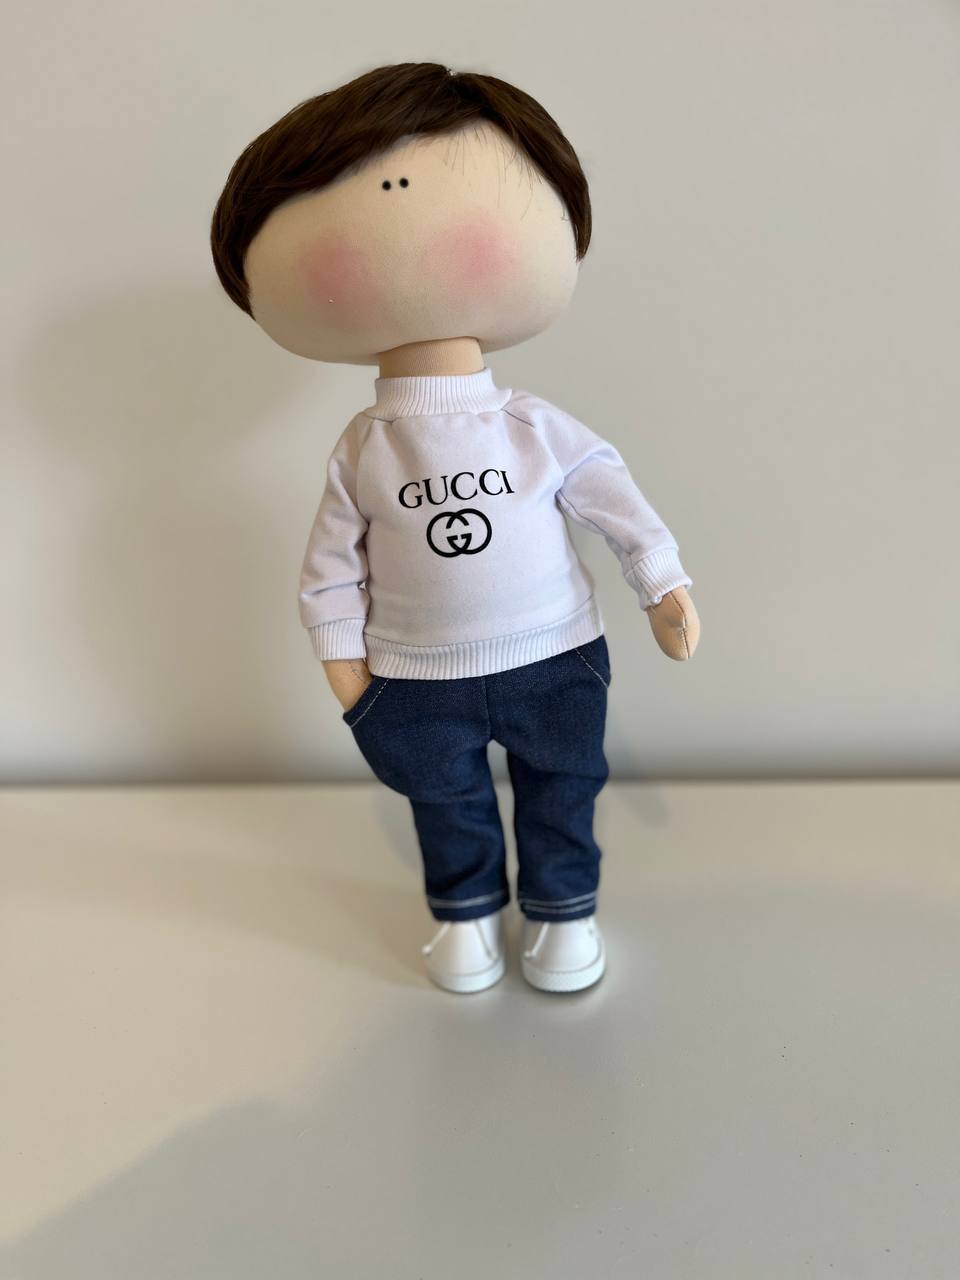 Lucas, Handmade Tilda Rag Doll